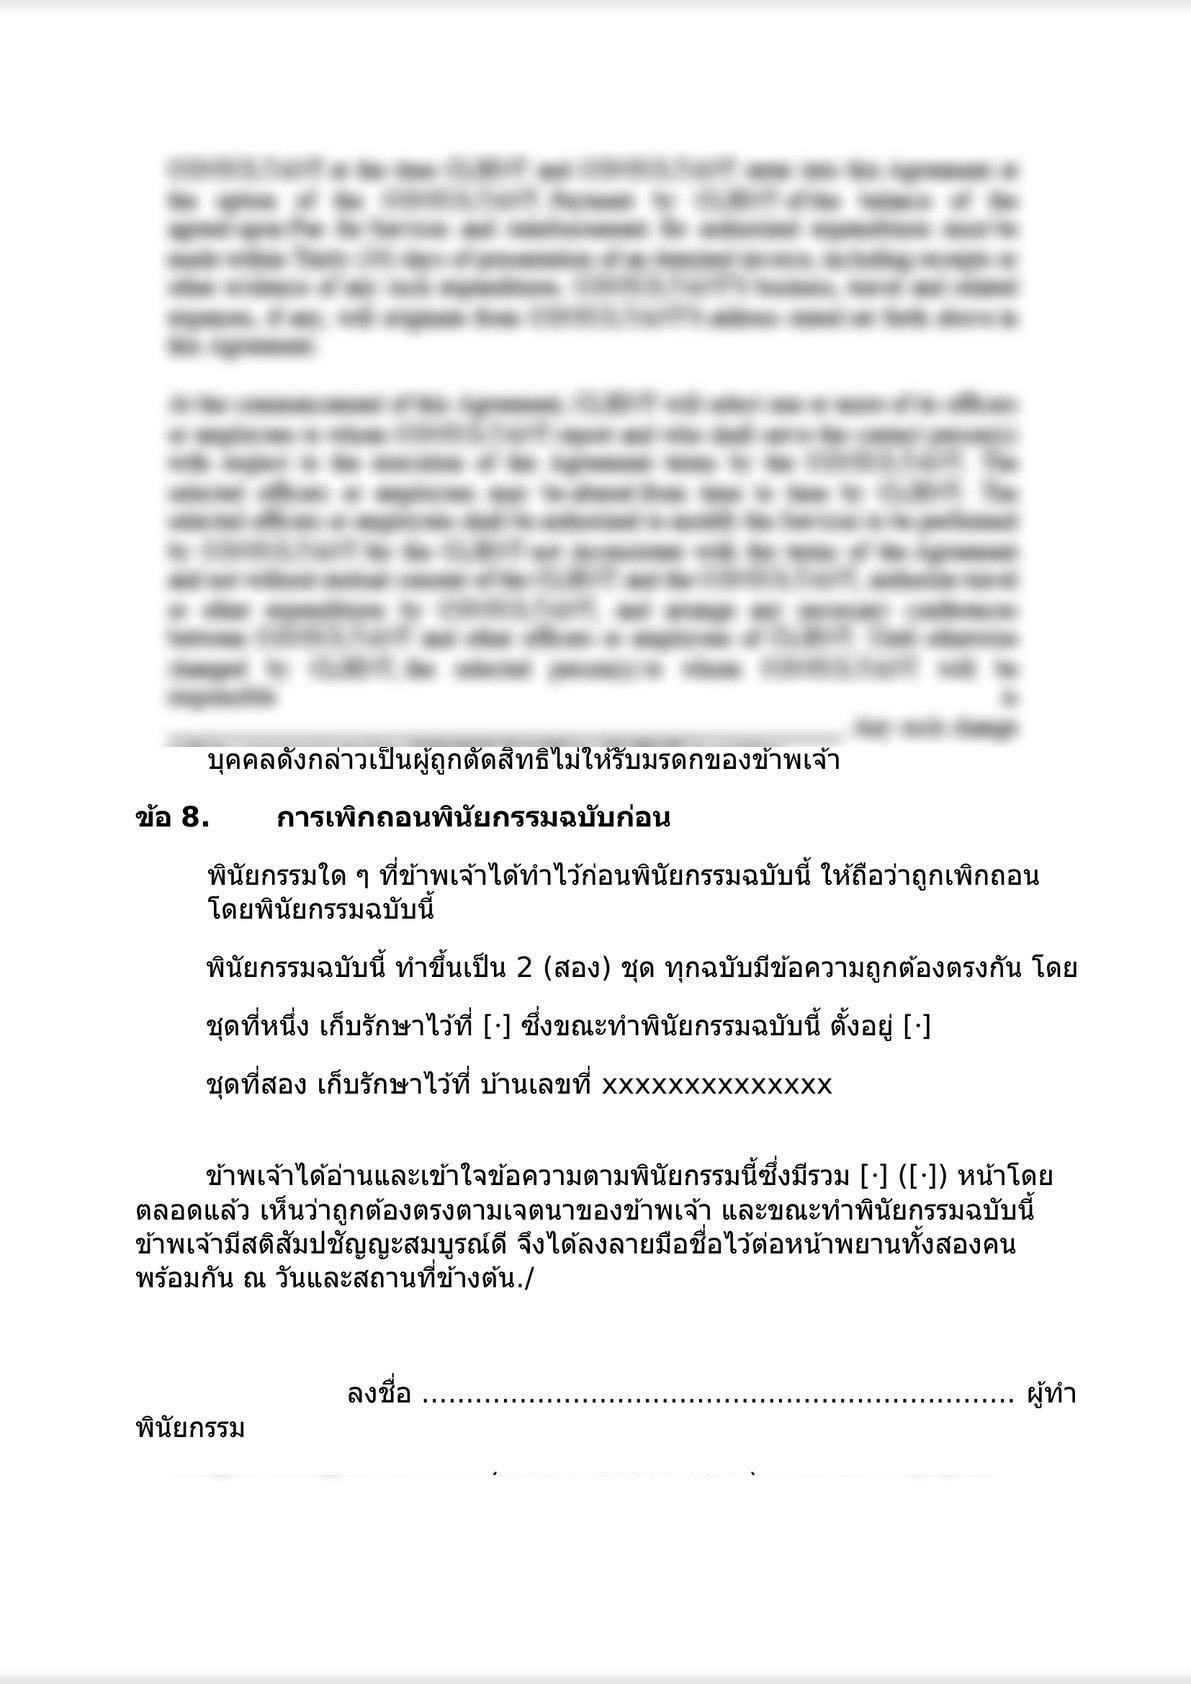 Will under Thai law-2